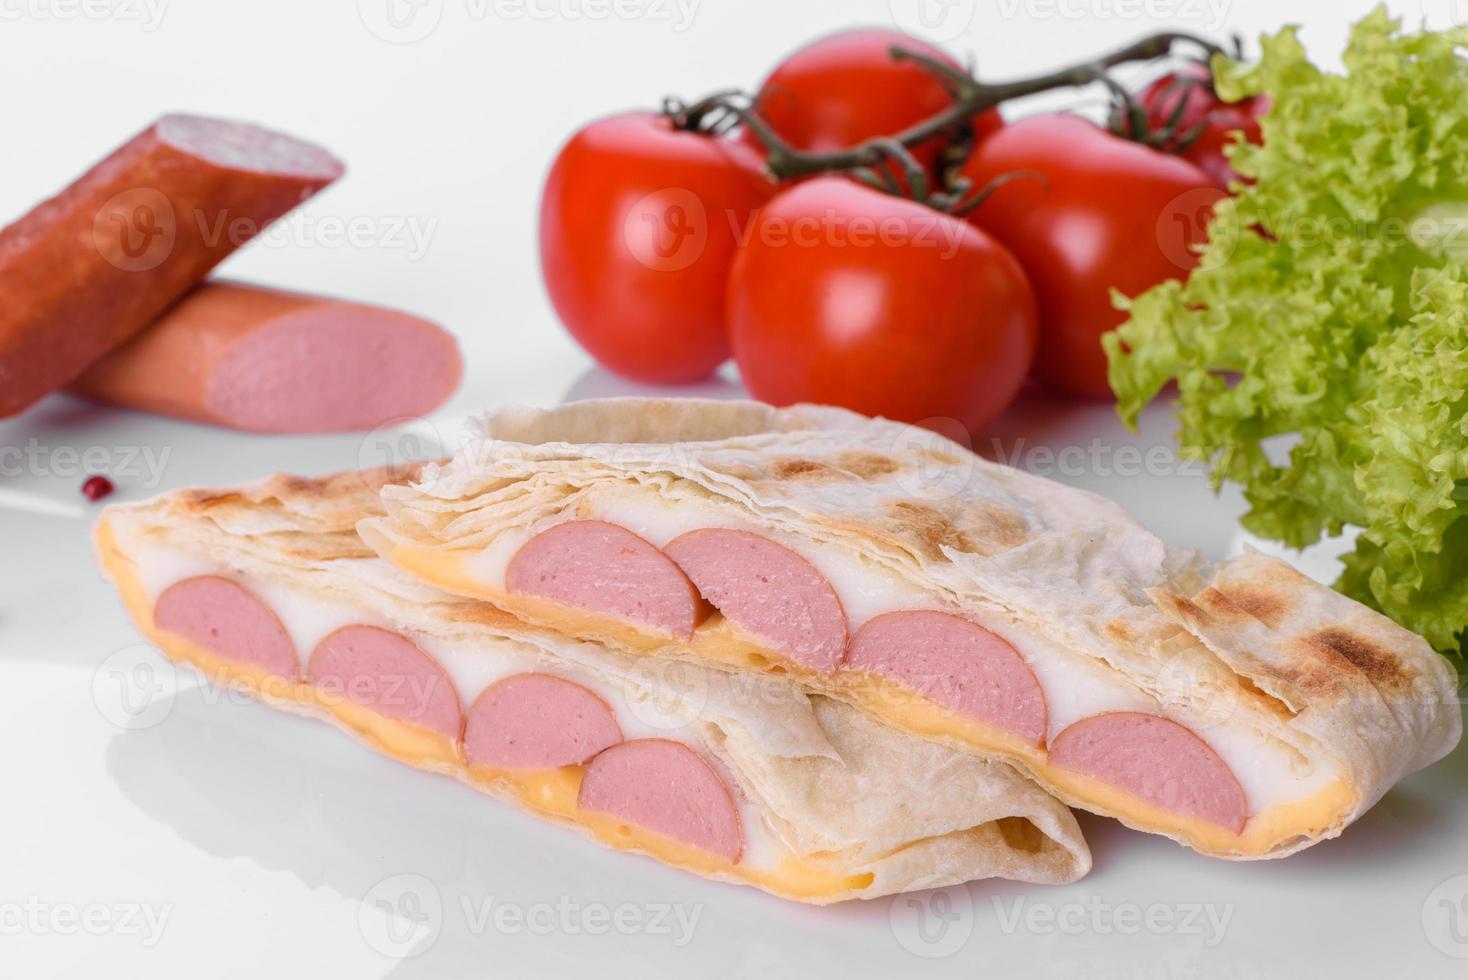 sanduiche deliciosa grelhada com pão sírio, queijo e carne foto